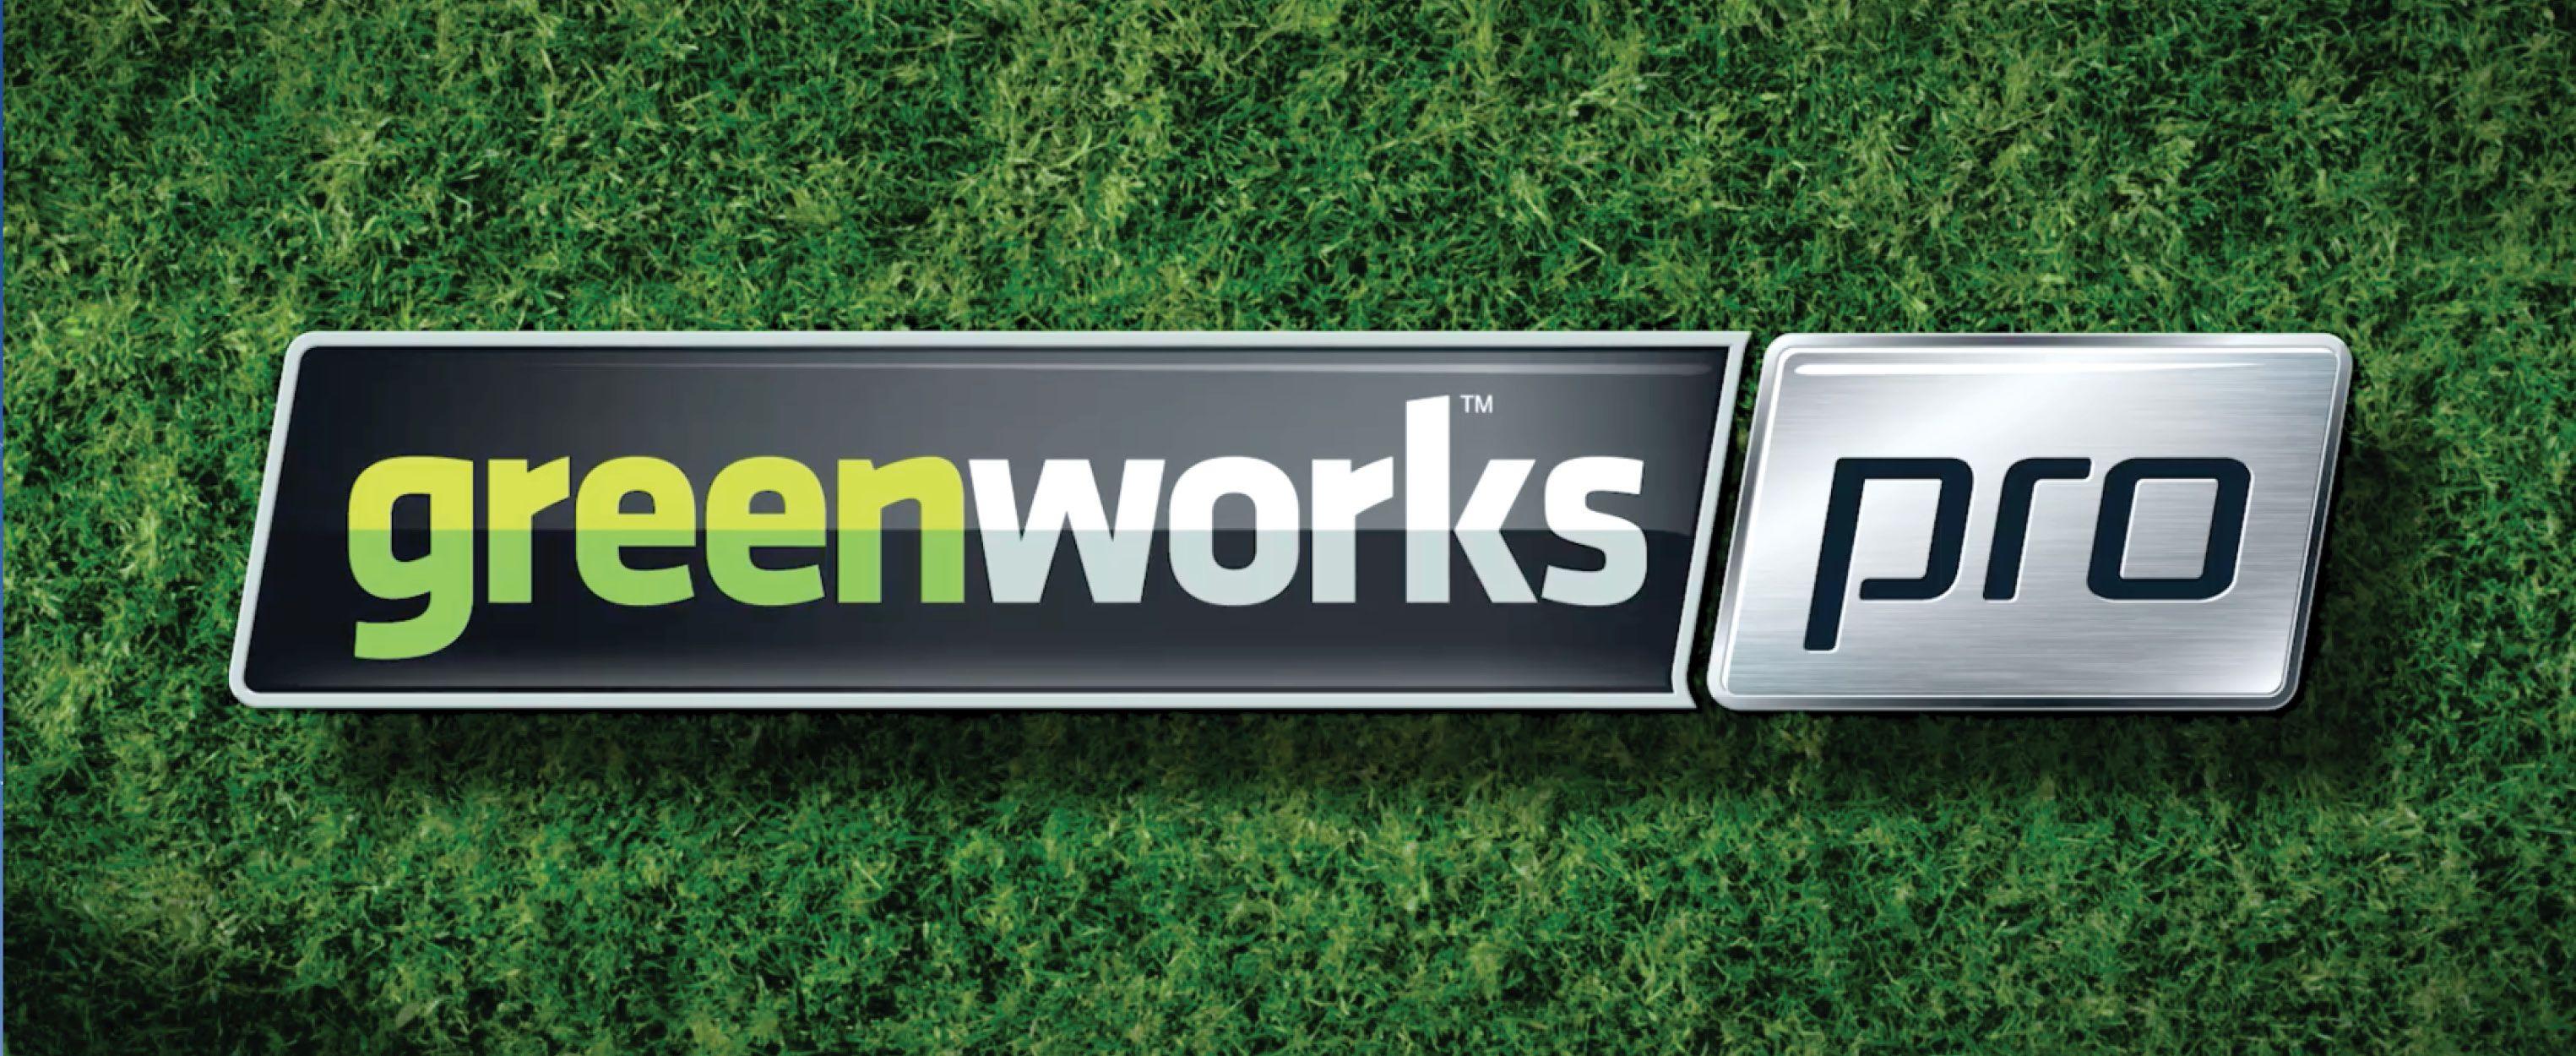 Greenworks Logo - Greenworks